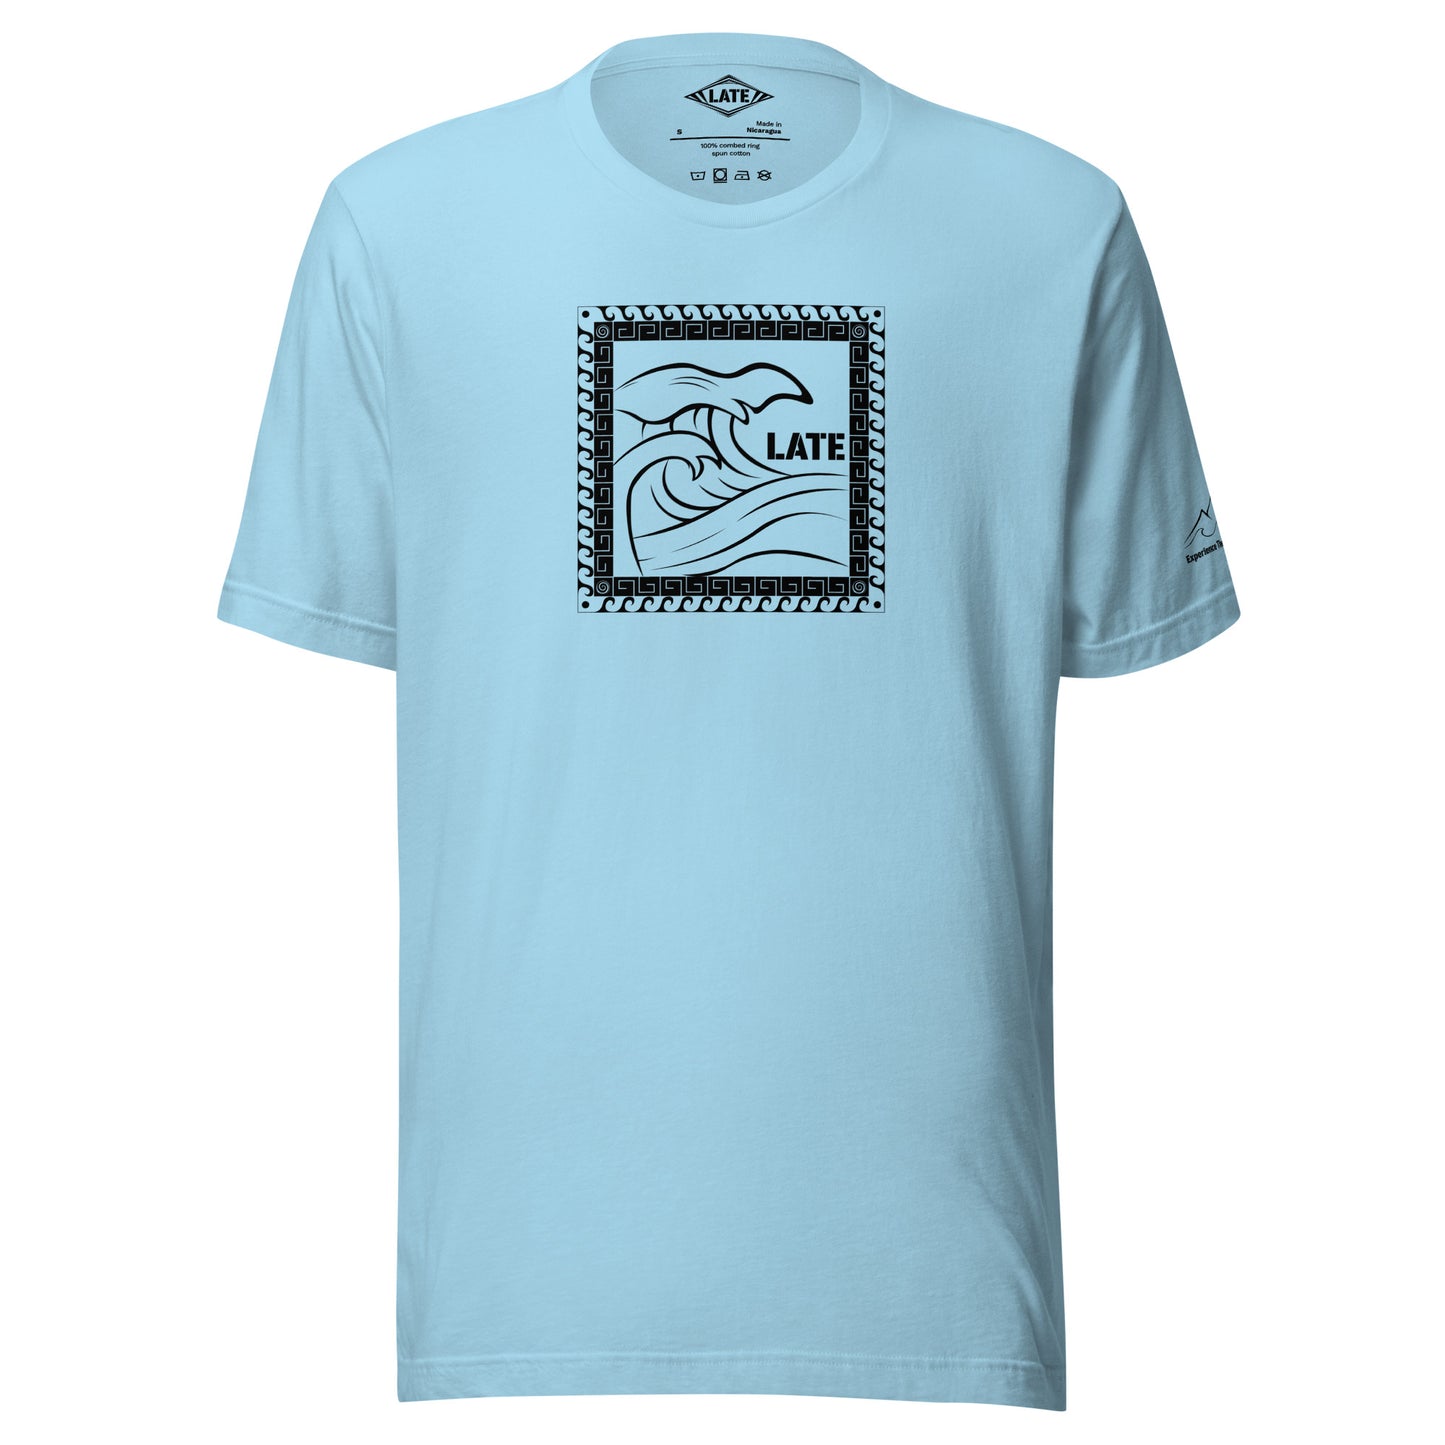 T-Shirt Tricky Wave design vague japonnaise et contour maori texte Late marque de vetement de surf. Tshirt unisex couleur bleu océan